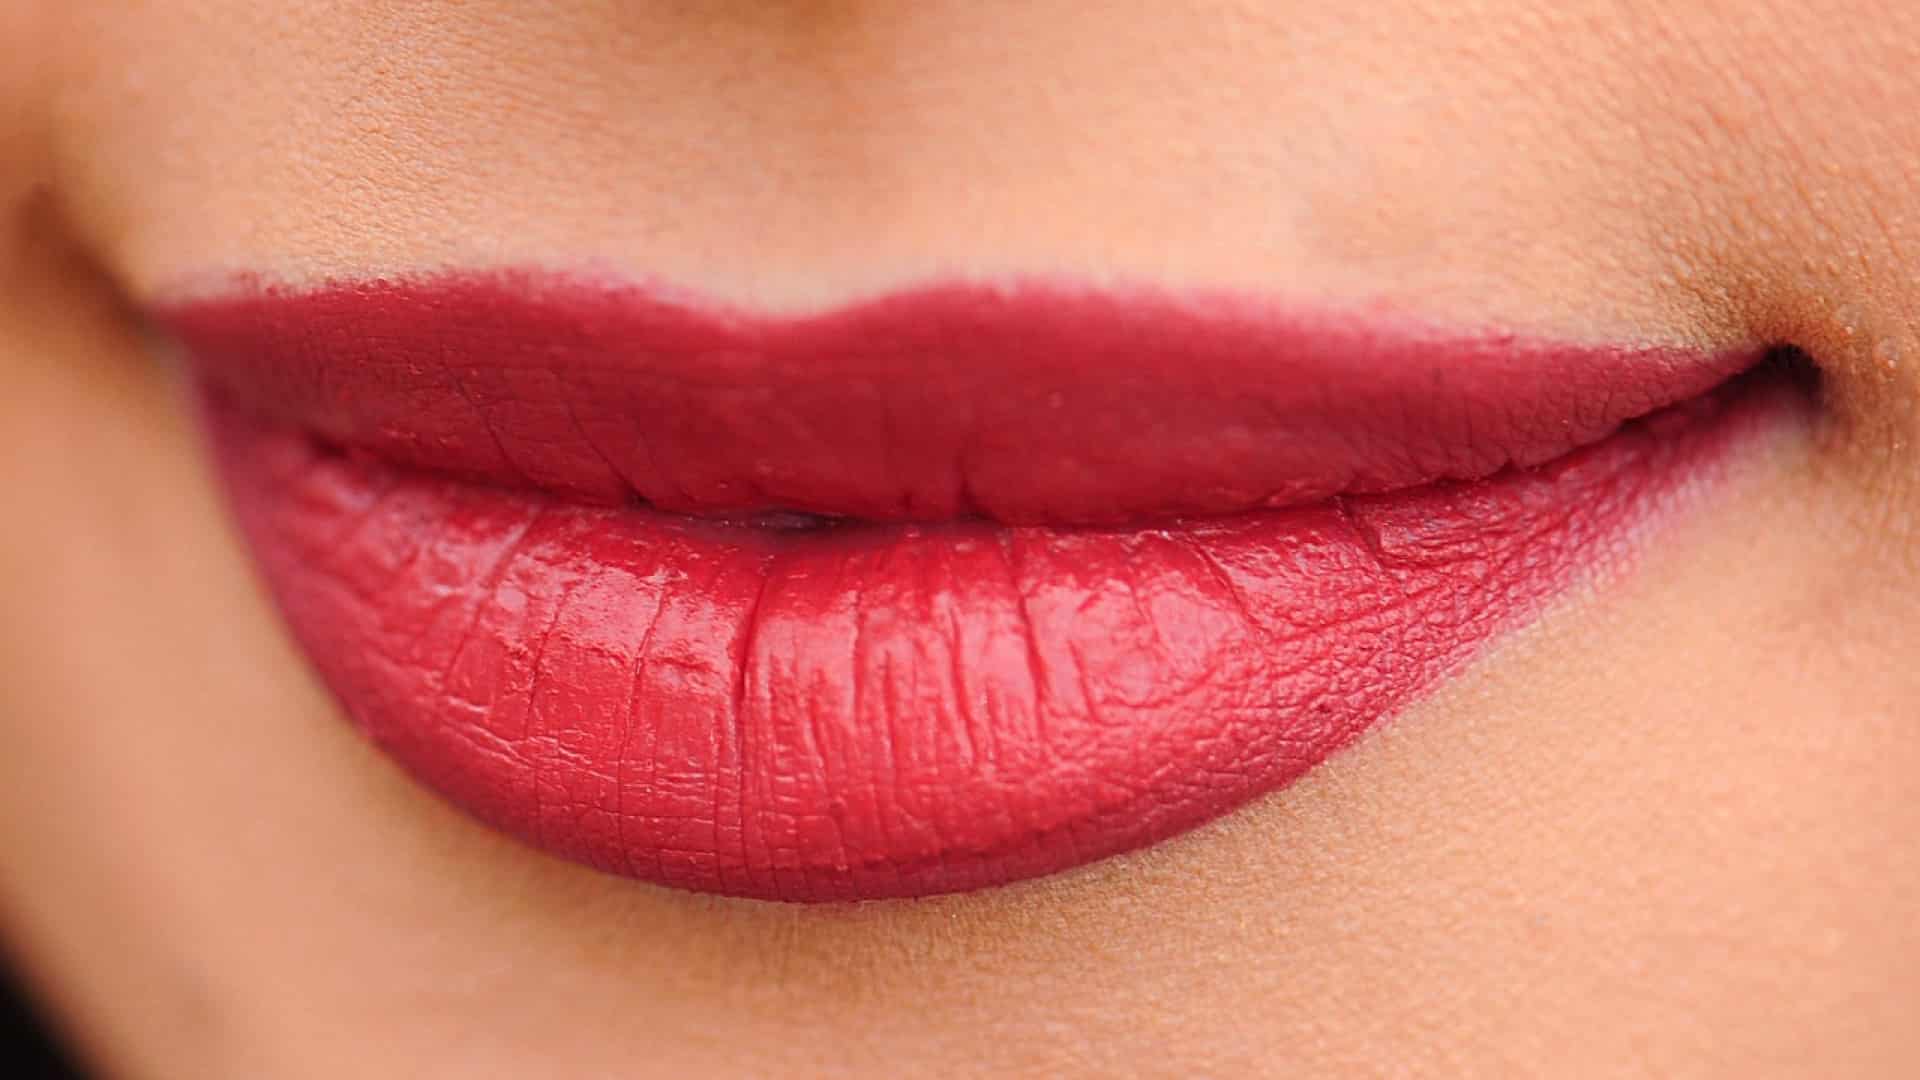 Comment bien choisir un baume à lèvres ?